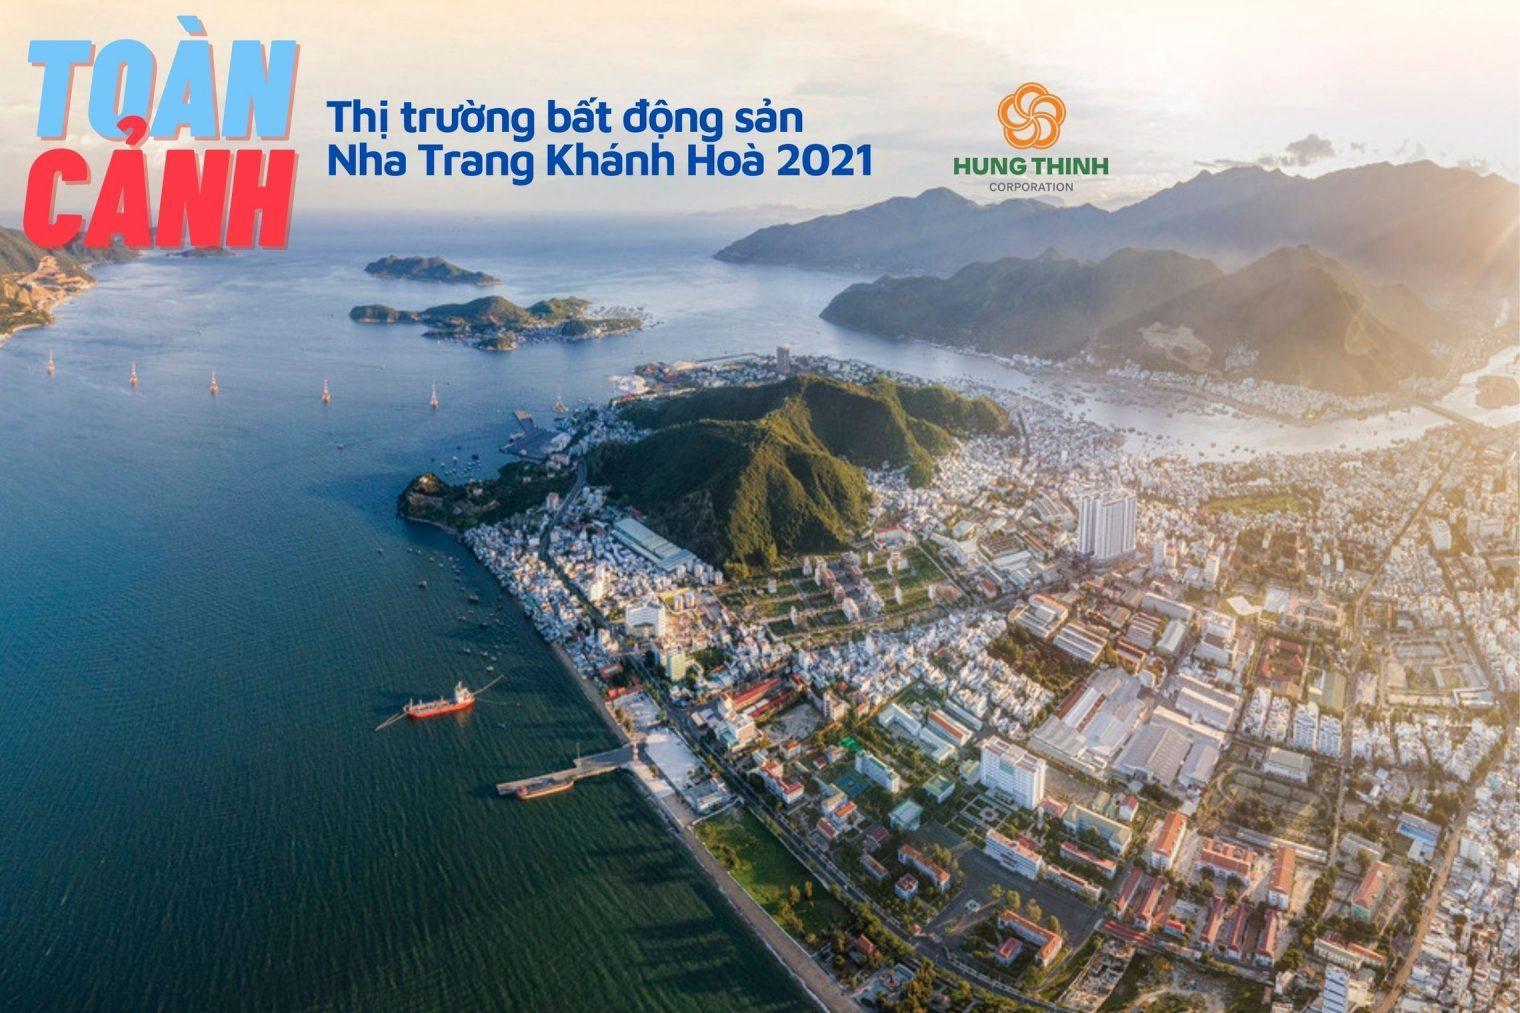 You are currently viewing Toàn cảnh bất động sản Nha Trang: 6 tháng đầu năm 2021 vẫn trầm lắng